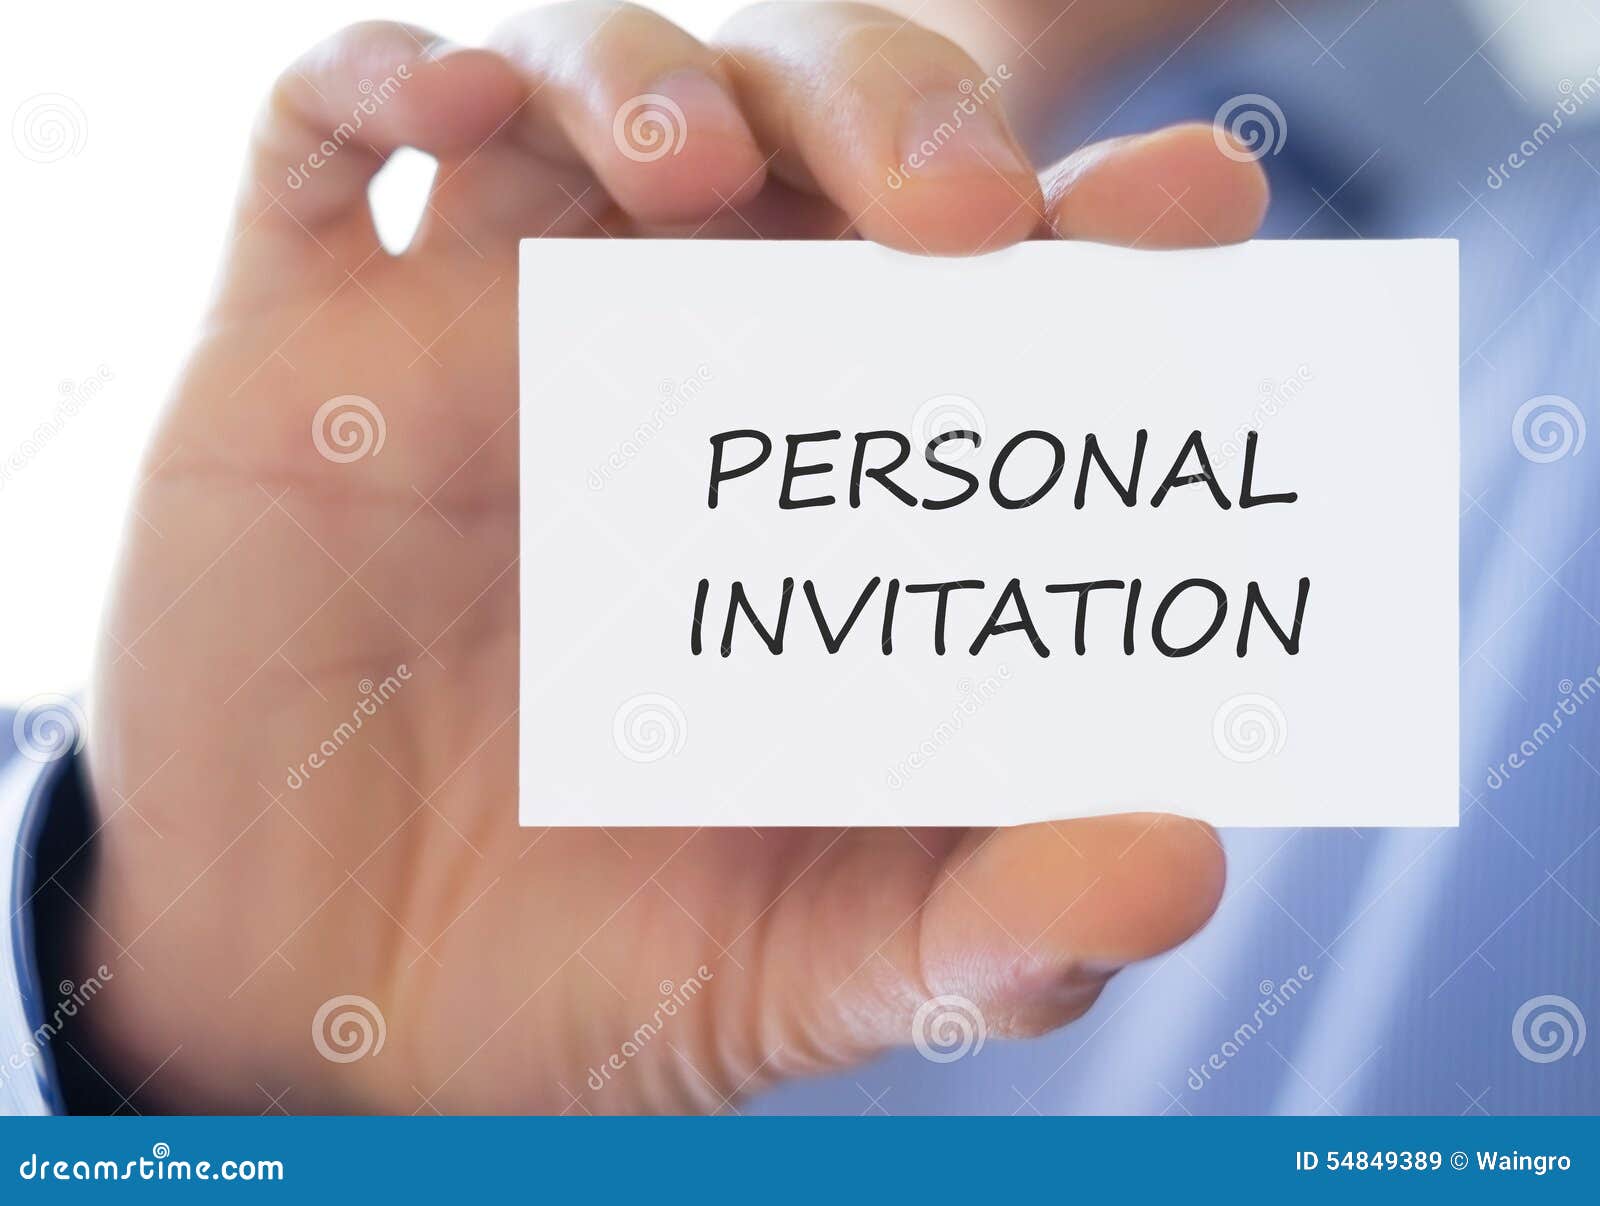 Personliche Einladung Stockbild Bild Von Einladung Personliche